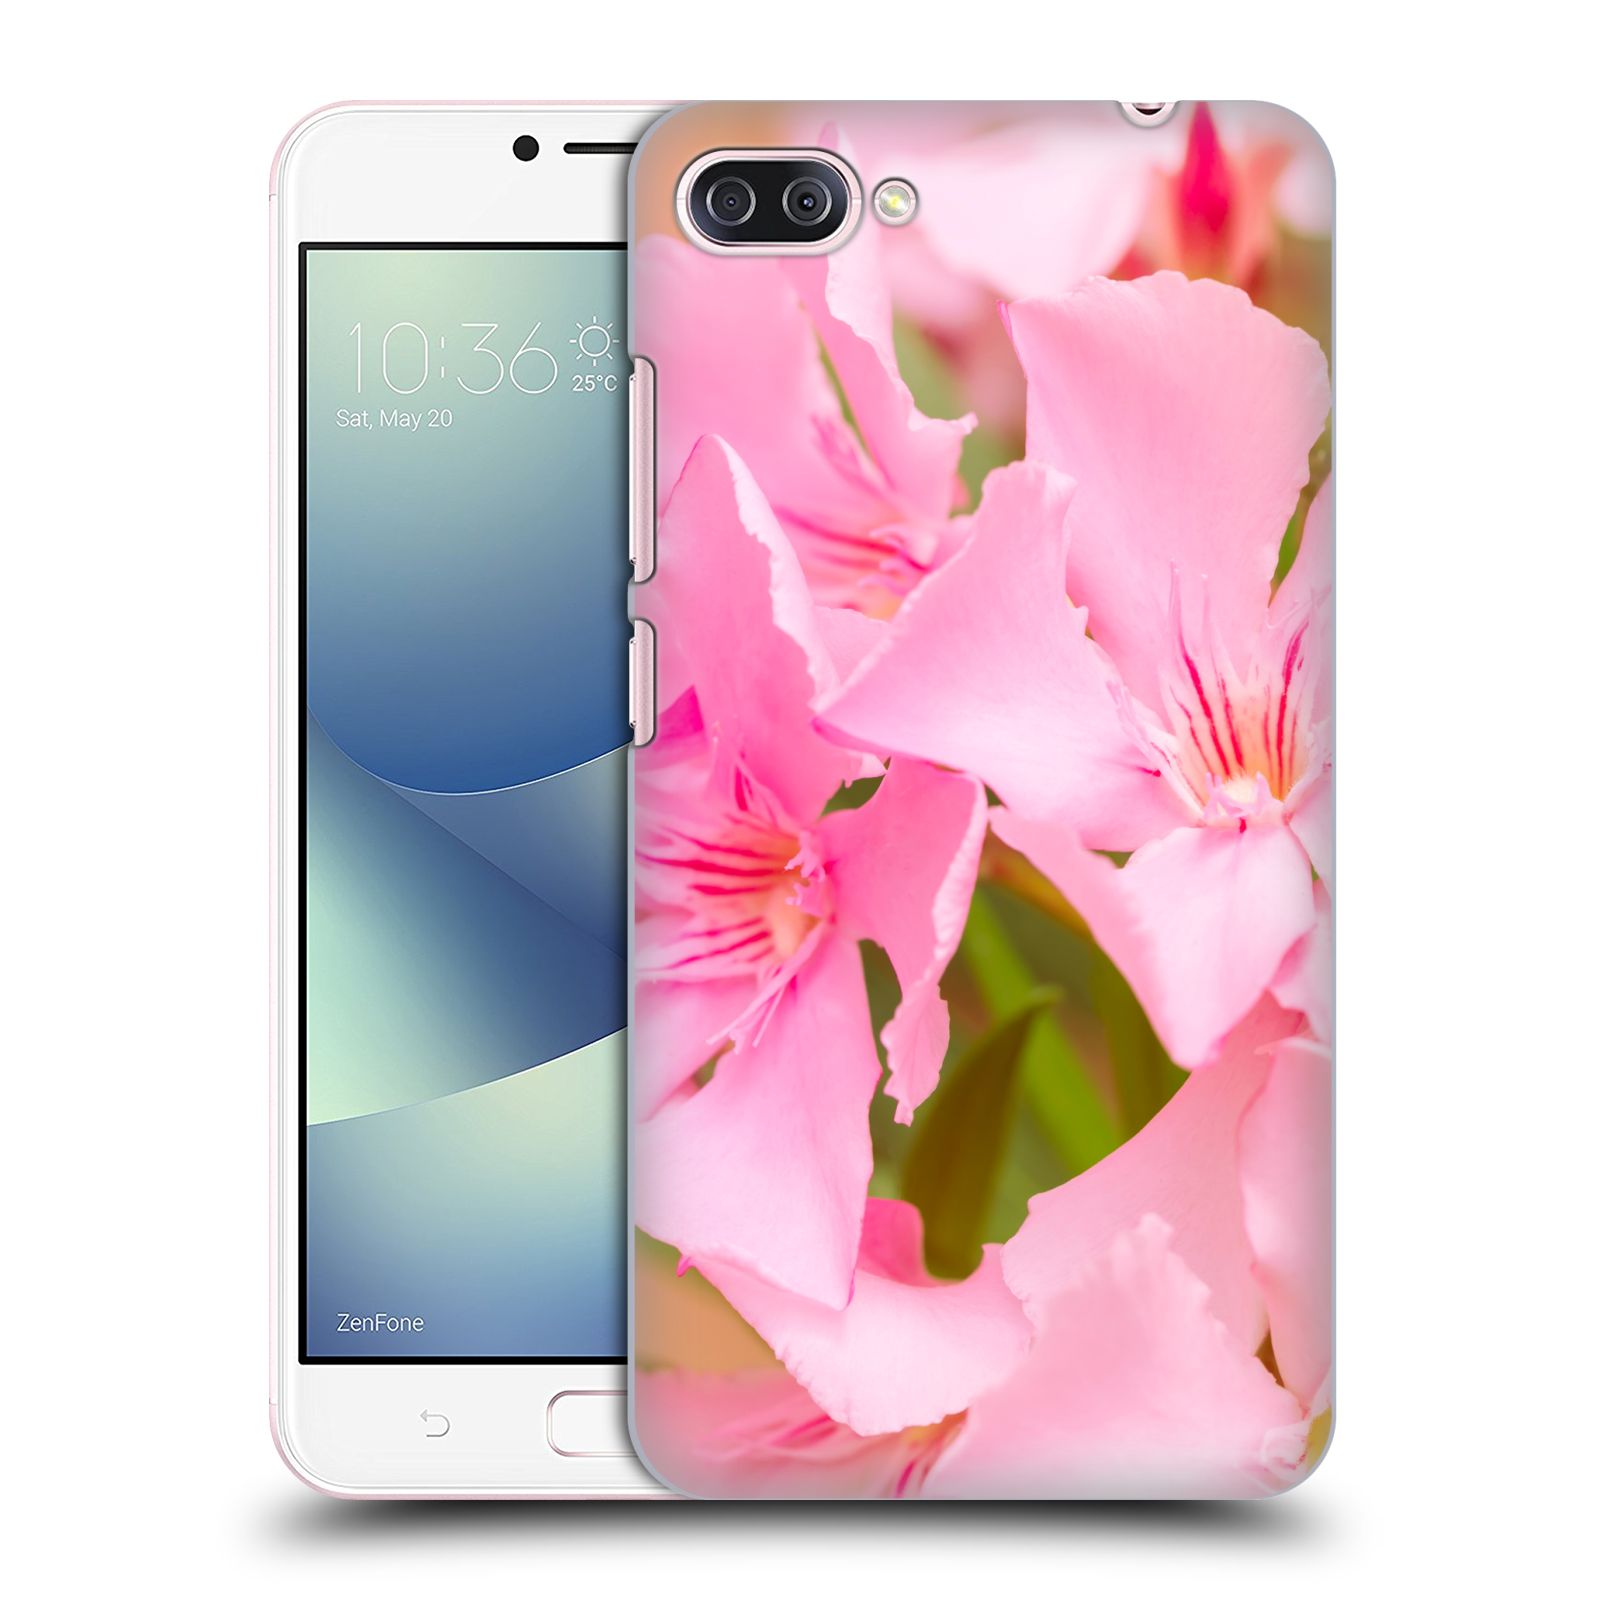 Zadní obal pro mobil Asus Zenfone 4 MAX / 4 MAX PRO (ZC554KL) - HEAD CASE - Beli - Růžové květy květina